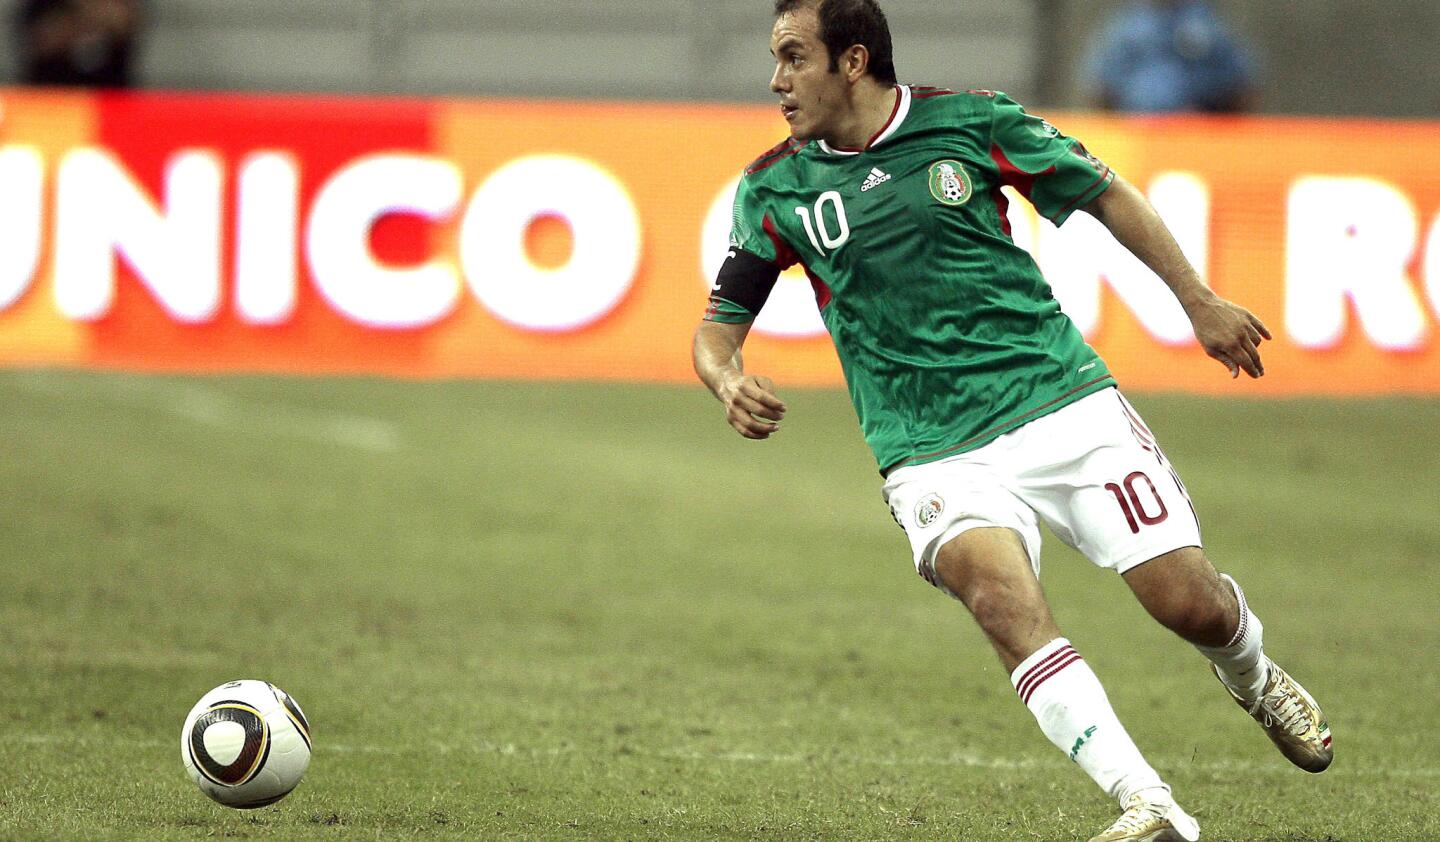 Selección Mexicana: Fue Mundialista en Francia 1998, Corea-Japón 2002 y Sudáfrica 2010; Copa Confederaciones 1997 y 1999 (campeón); Copa América 1997, 1999 y 2007; Copa Oro 1996 (campeón), 1998 (cmpeón) y 2007 (subcampeón).